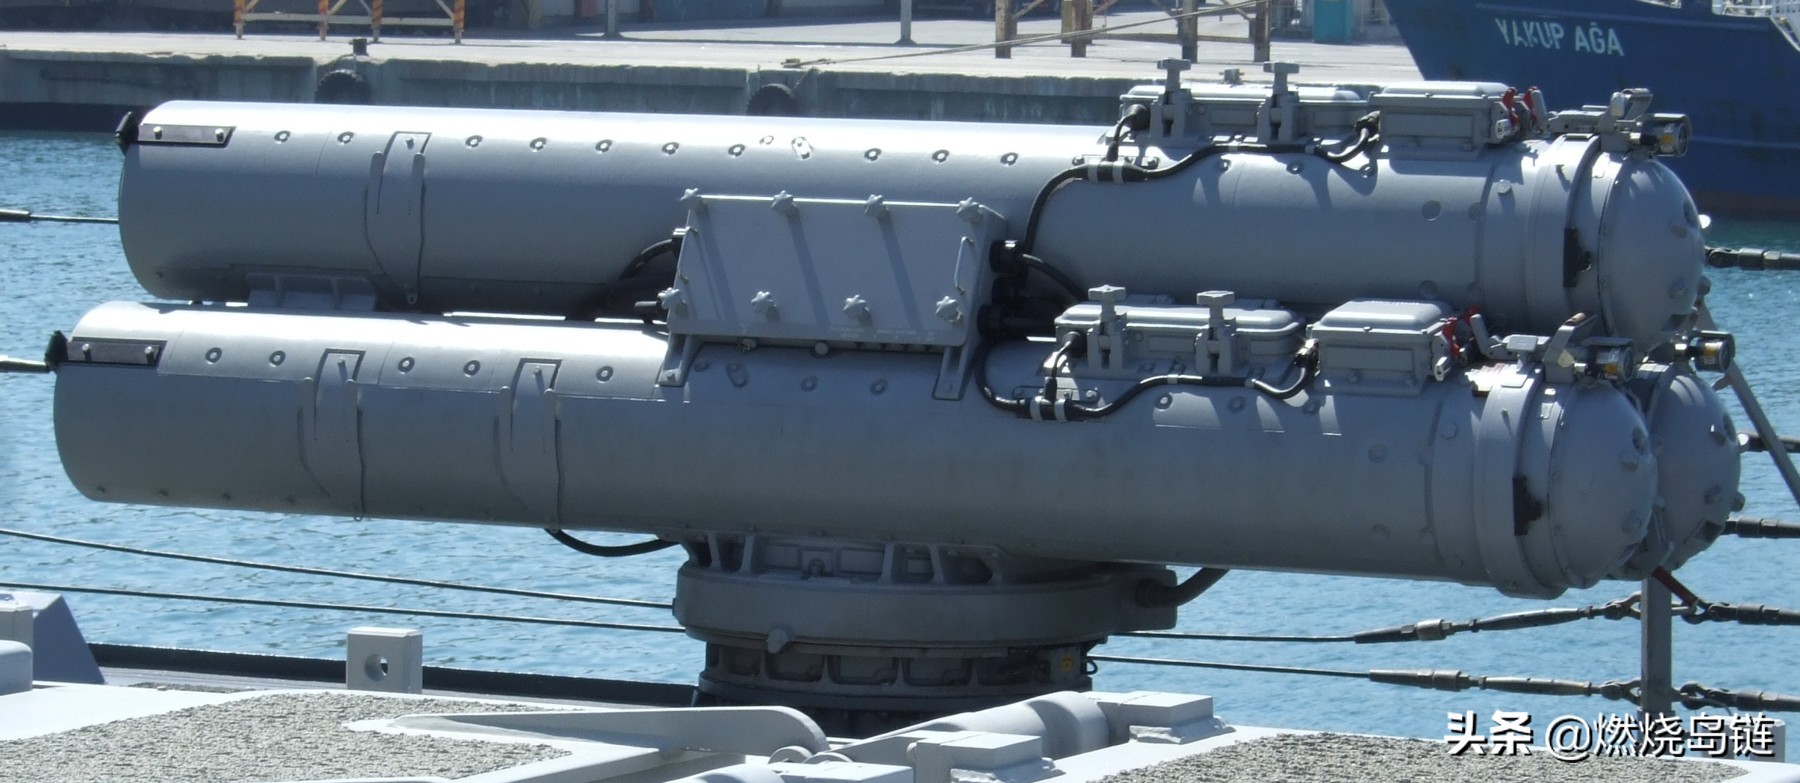 欧美海军舰艇标配的反潜武器美国mk32型324毫米鱼雷发射管